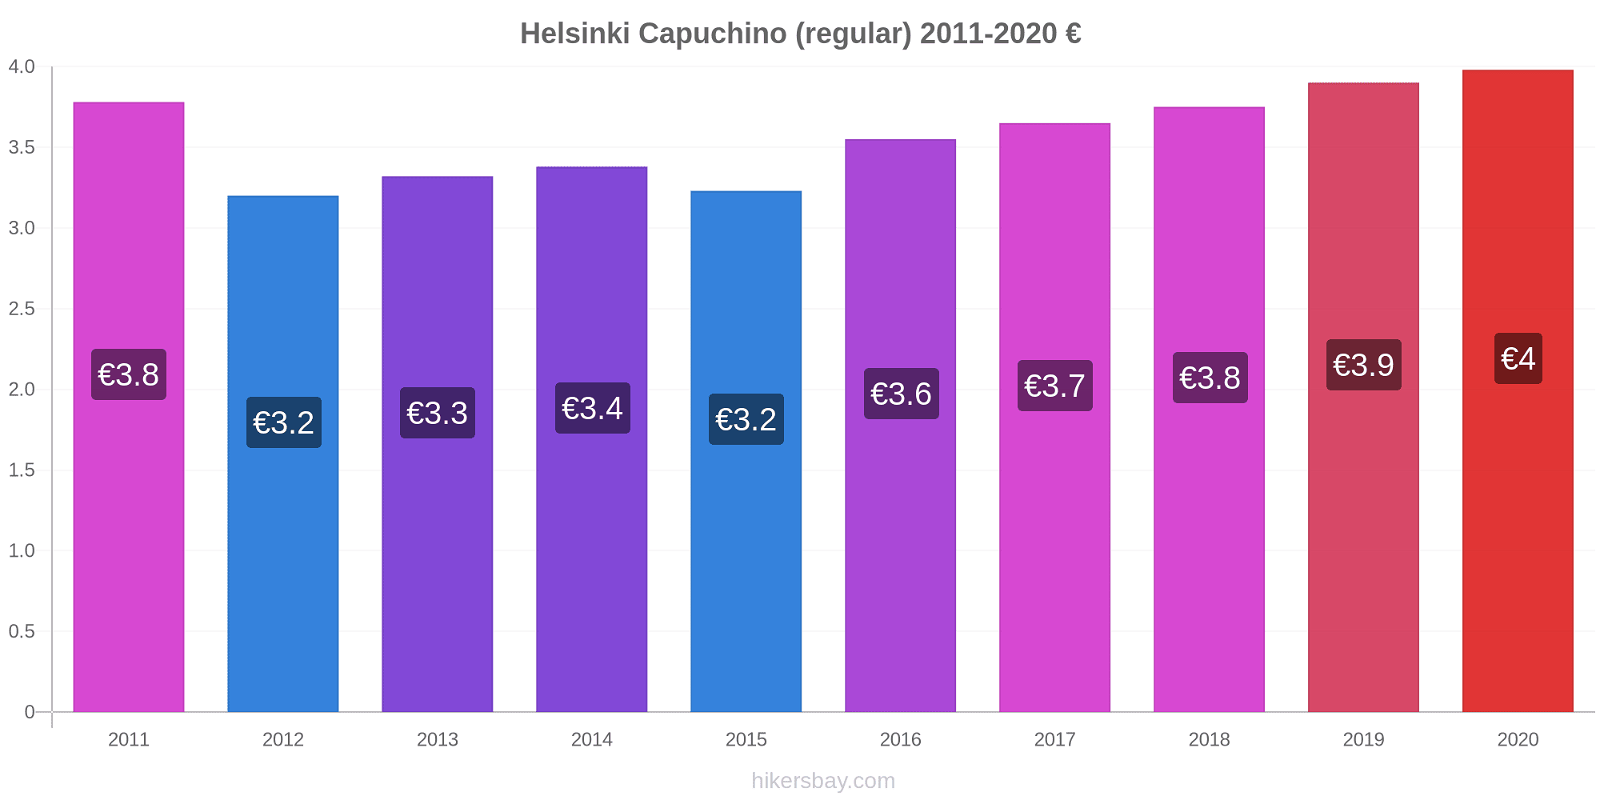 Helsinki cambios de precios Capuchino (regular) hikersbay.com